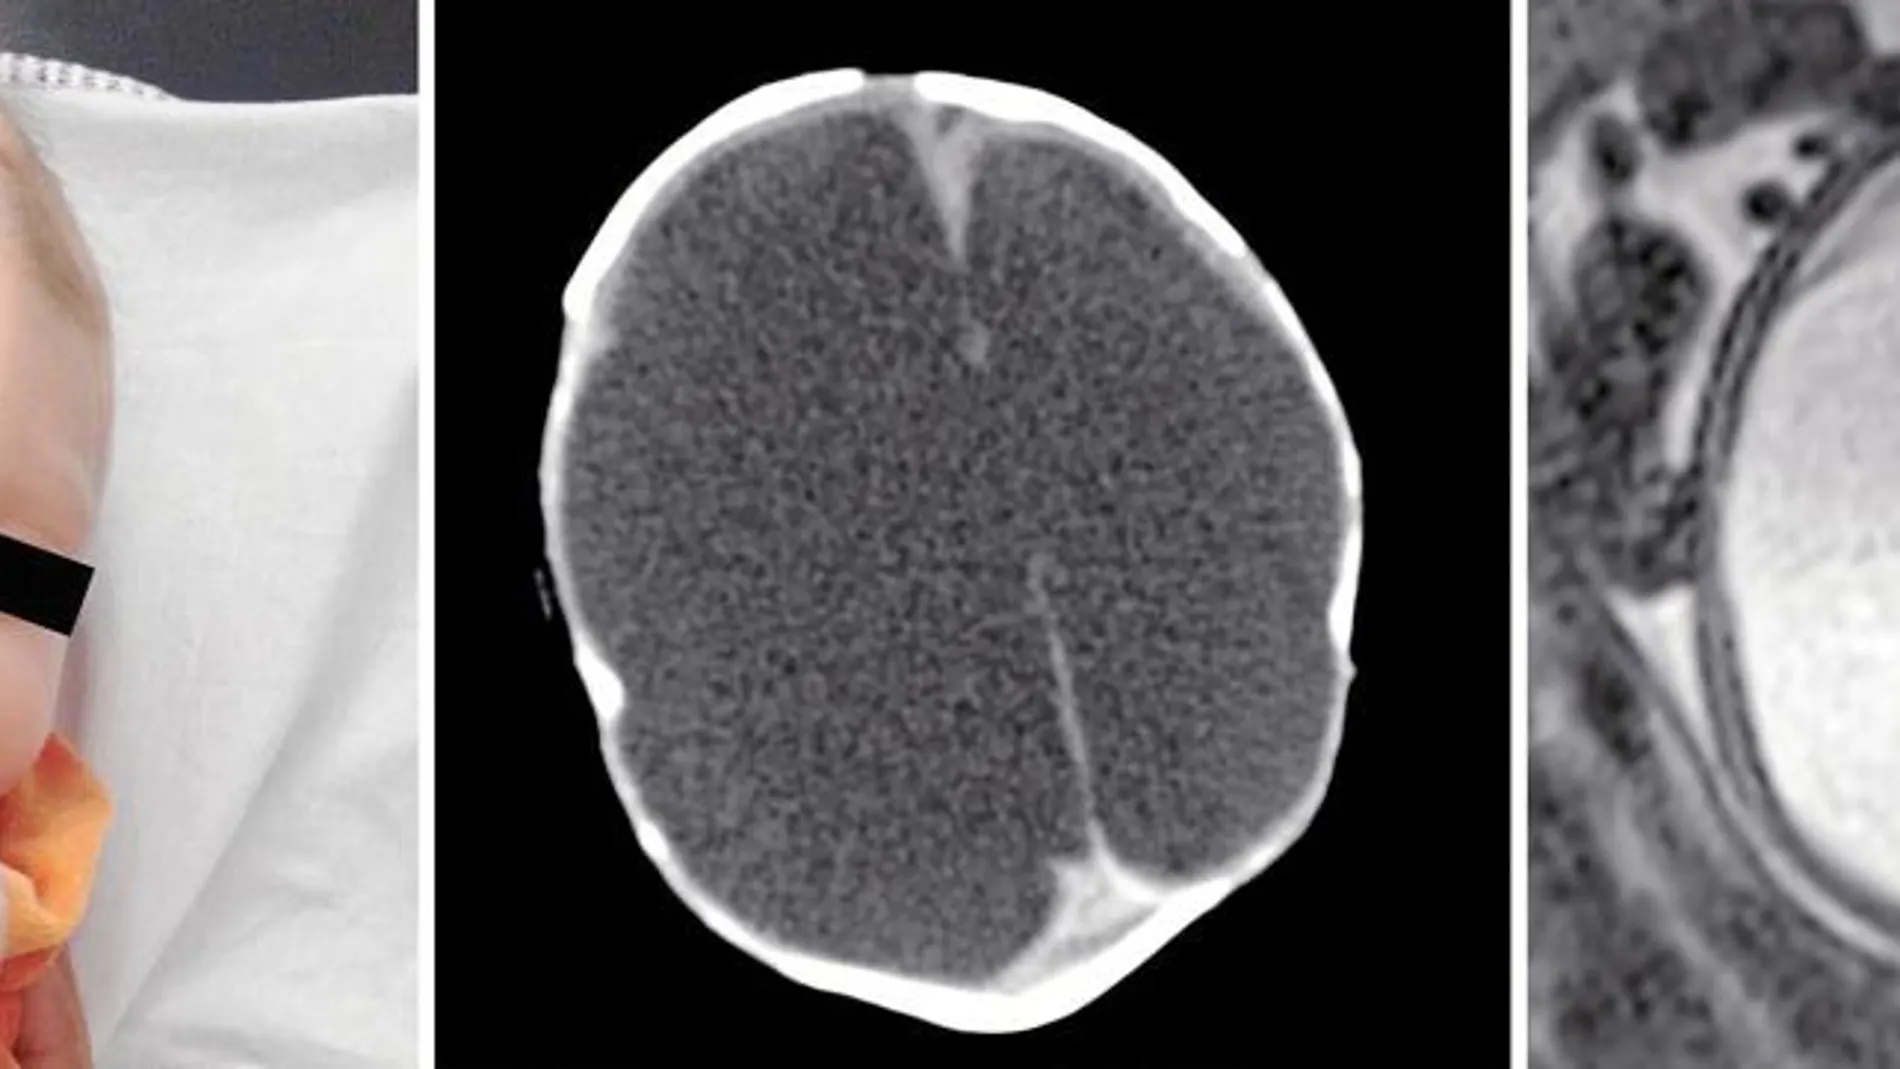 Los ventrículos cerebrales del bebé de la imagen estaban llenos de líquido cerebroespinal que no ha sido capaz de drenar